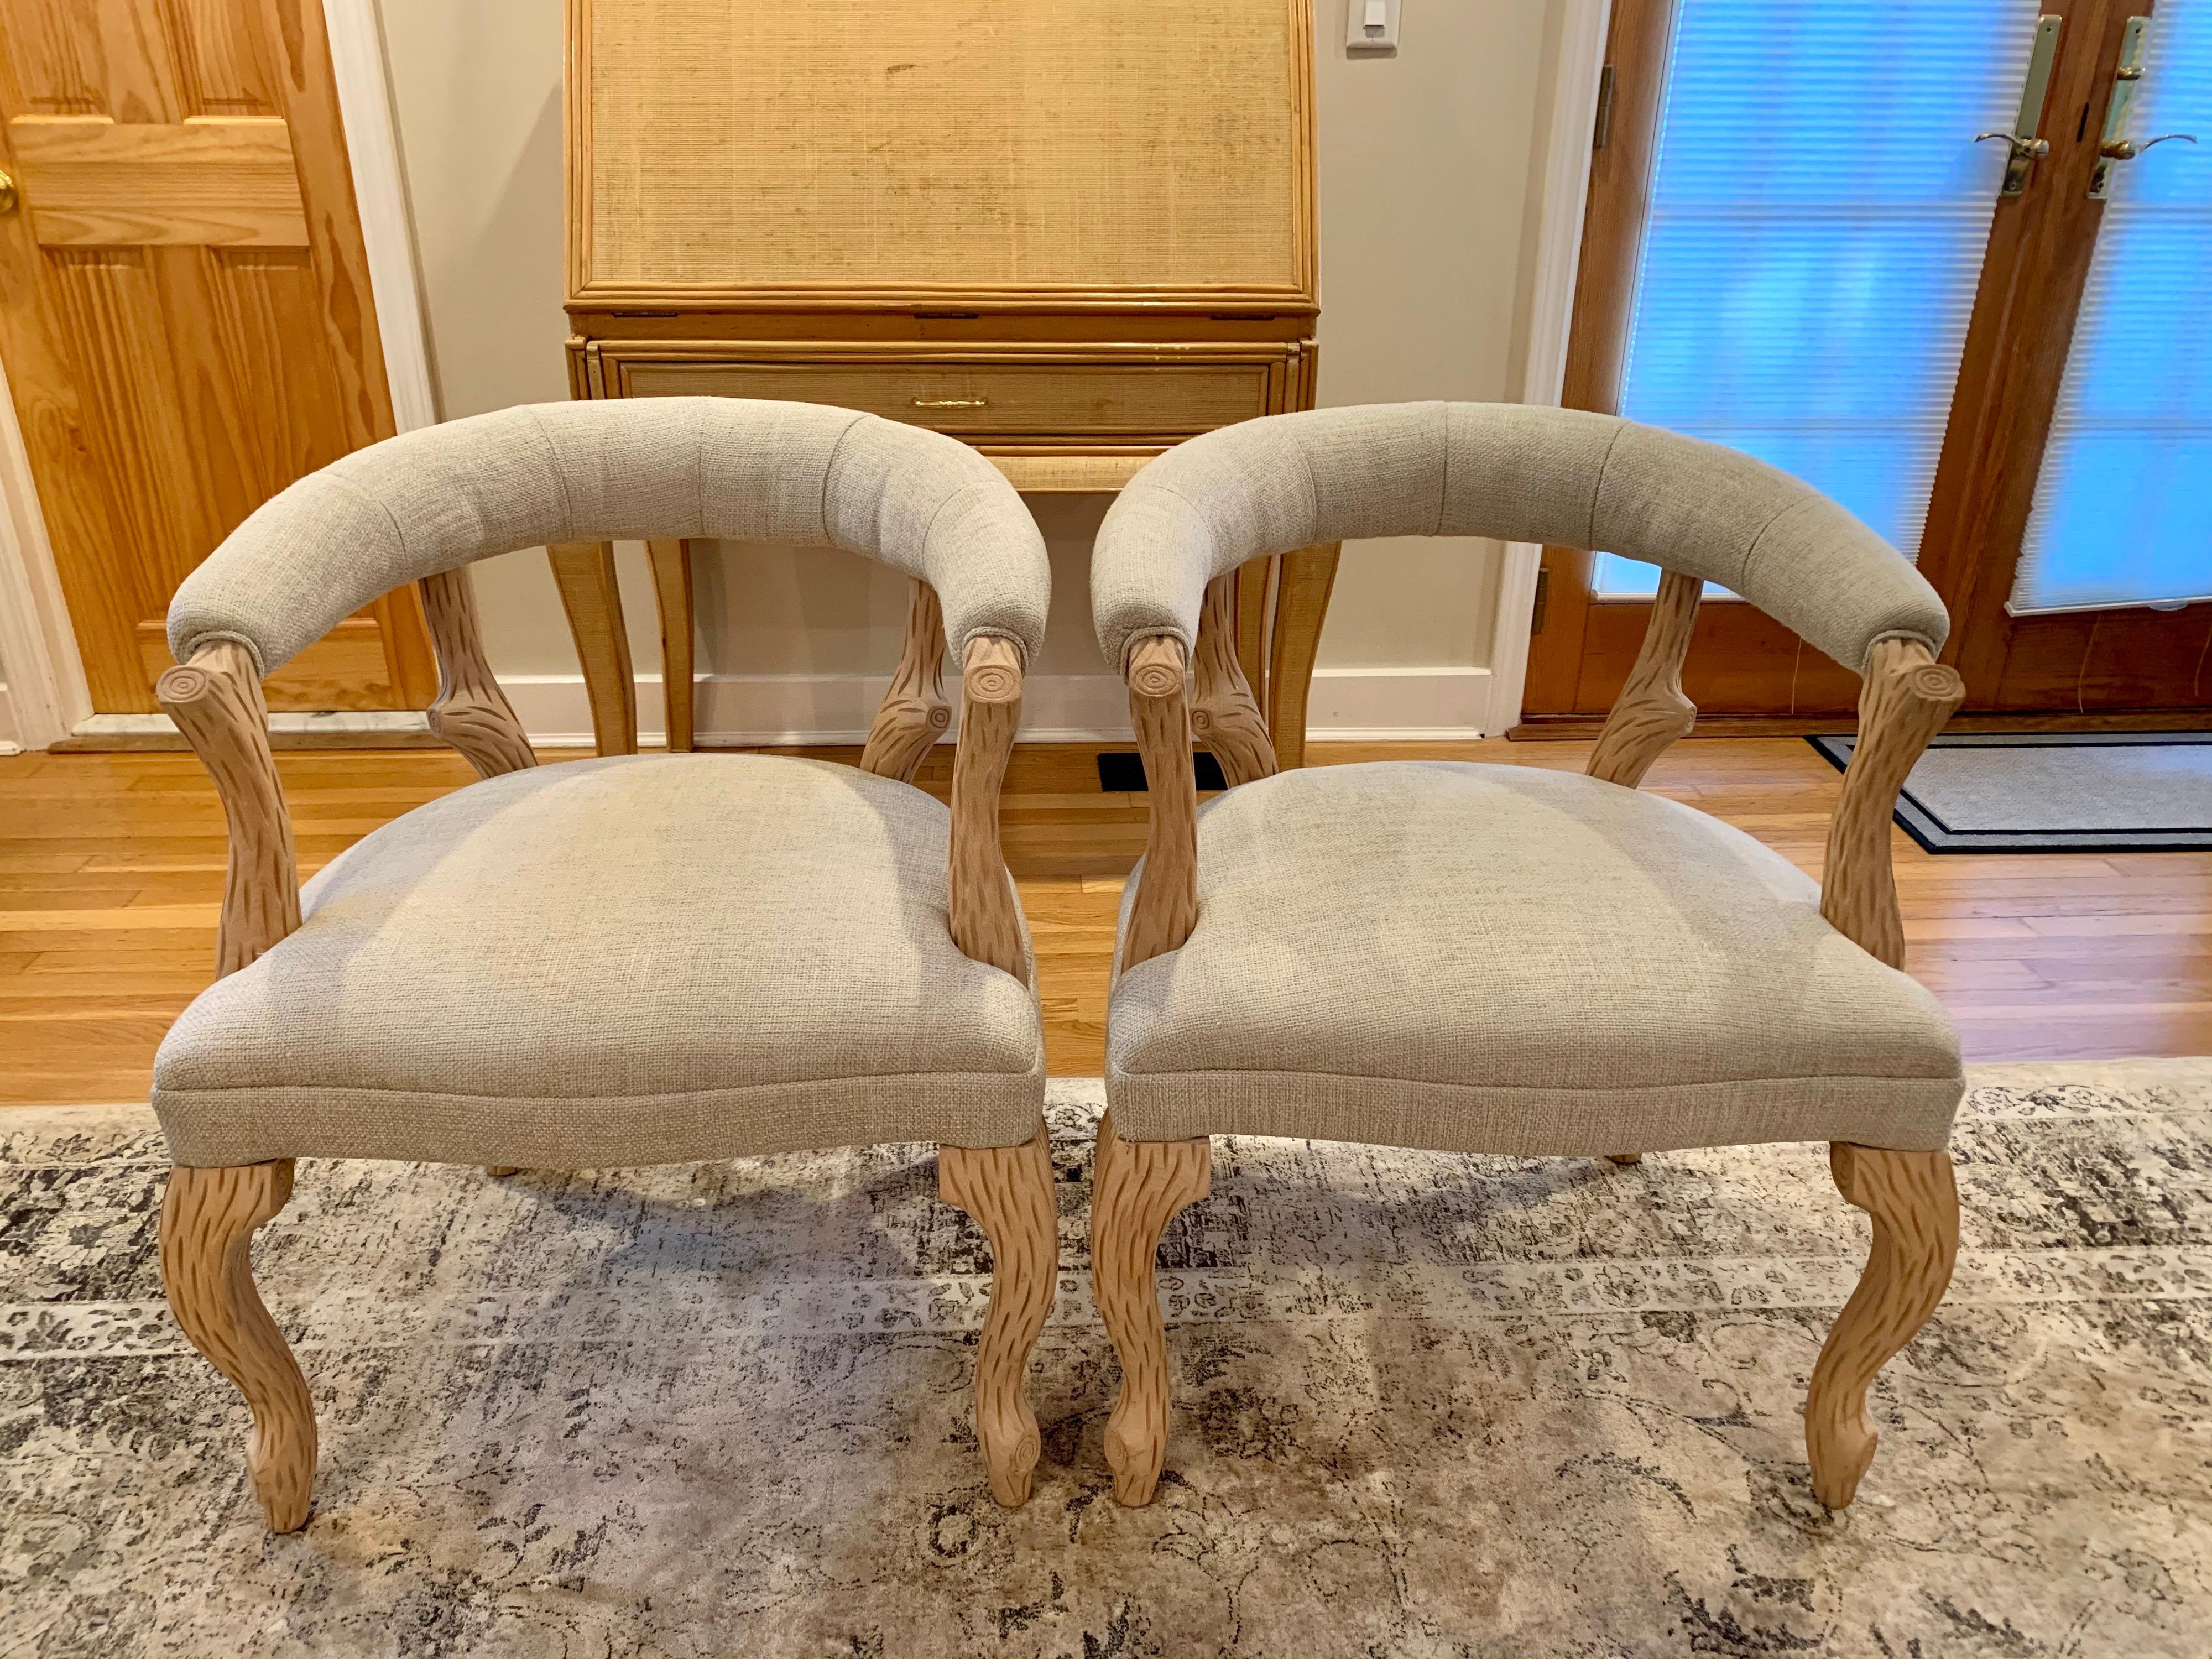 Il s'agit d'une belle paire d'élégantes chaises en faux bois à dossier arrondi dans le style de Nina Ditzel. Le bois est décapé et blanchi pour retrouver sa belle couleur naturelle - très organique.